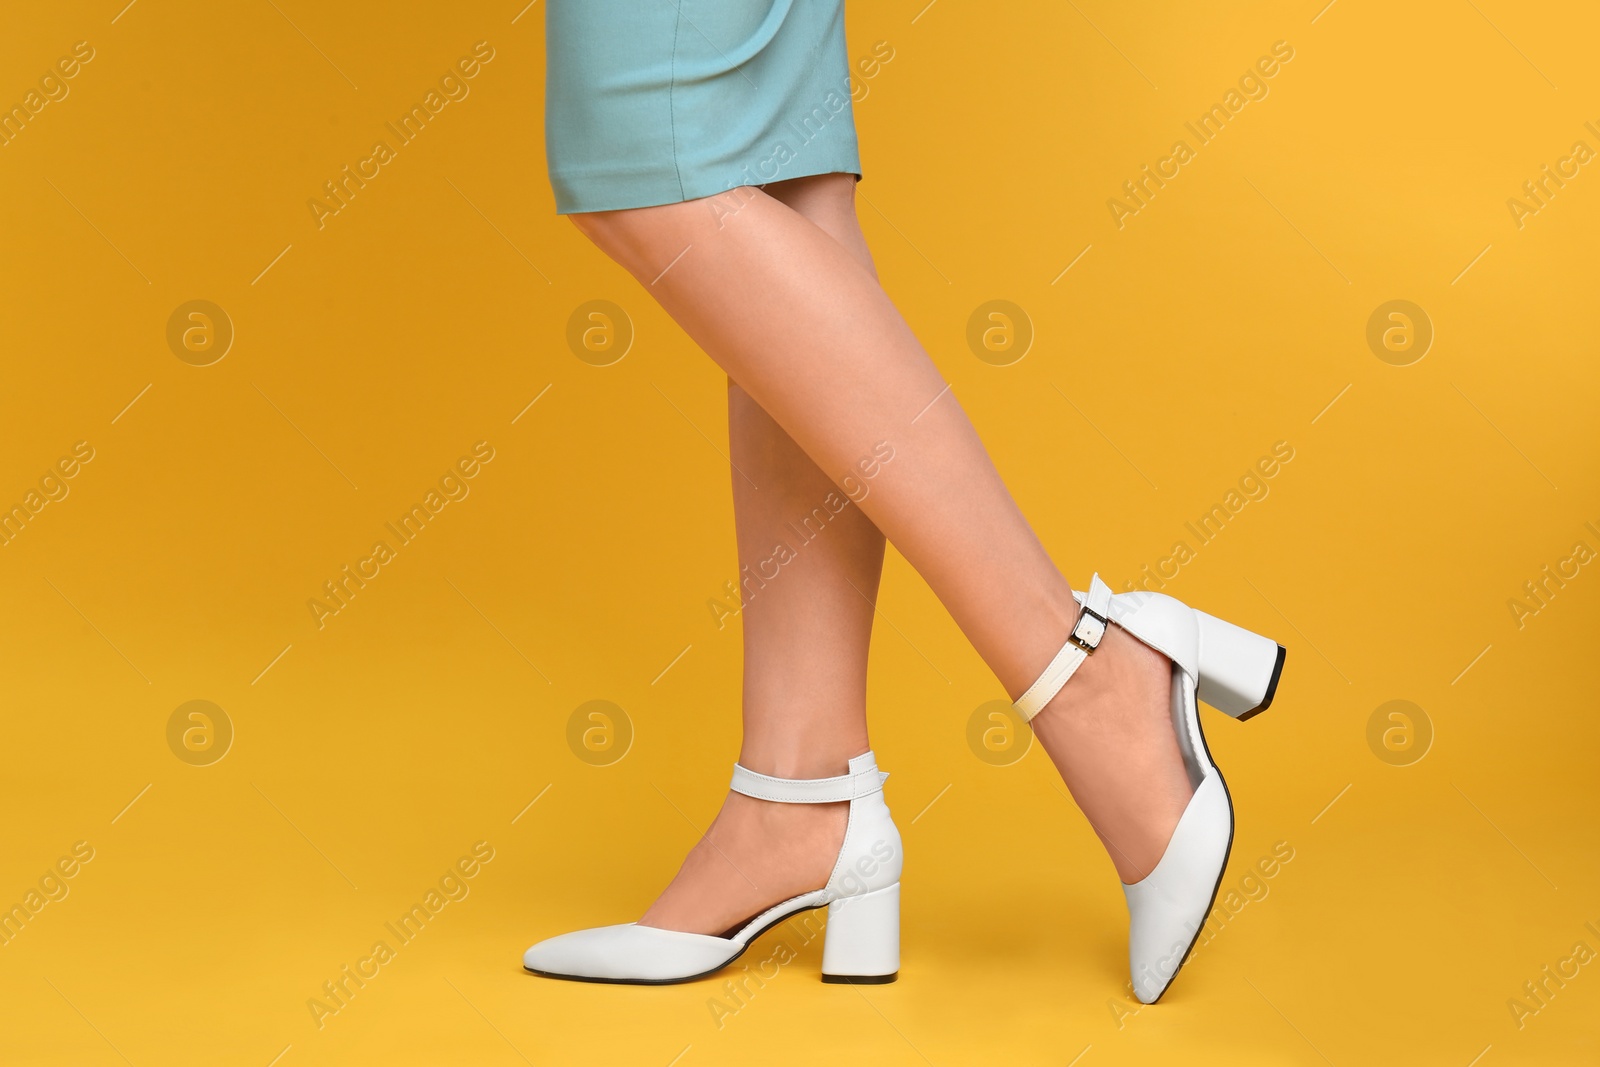 Photo of Woman wearing stylish shoes on yellow background, closeup